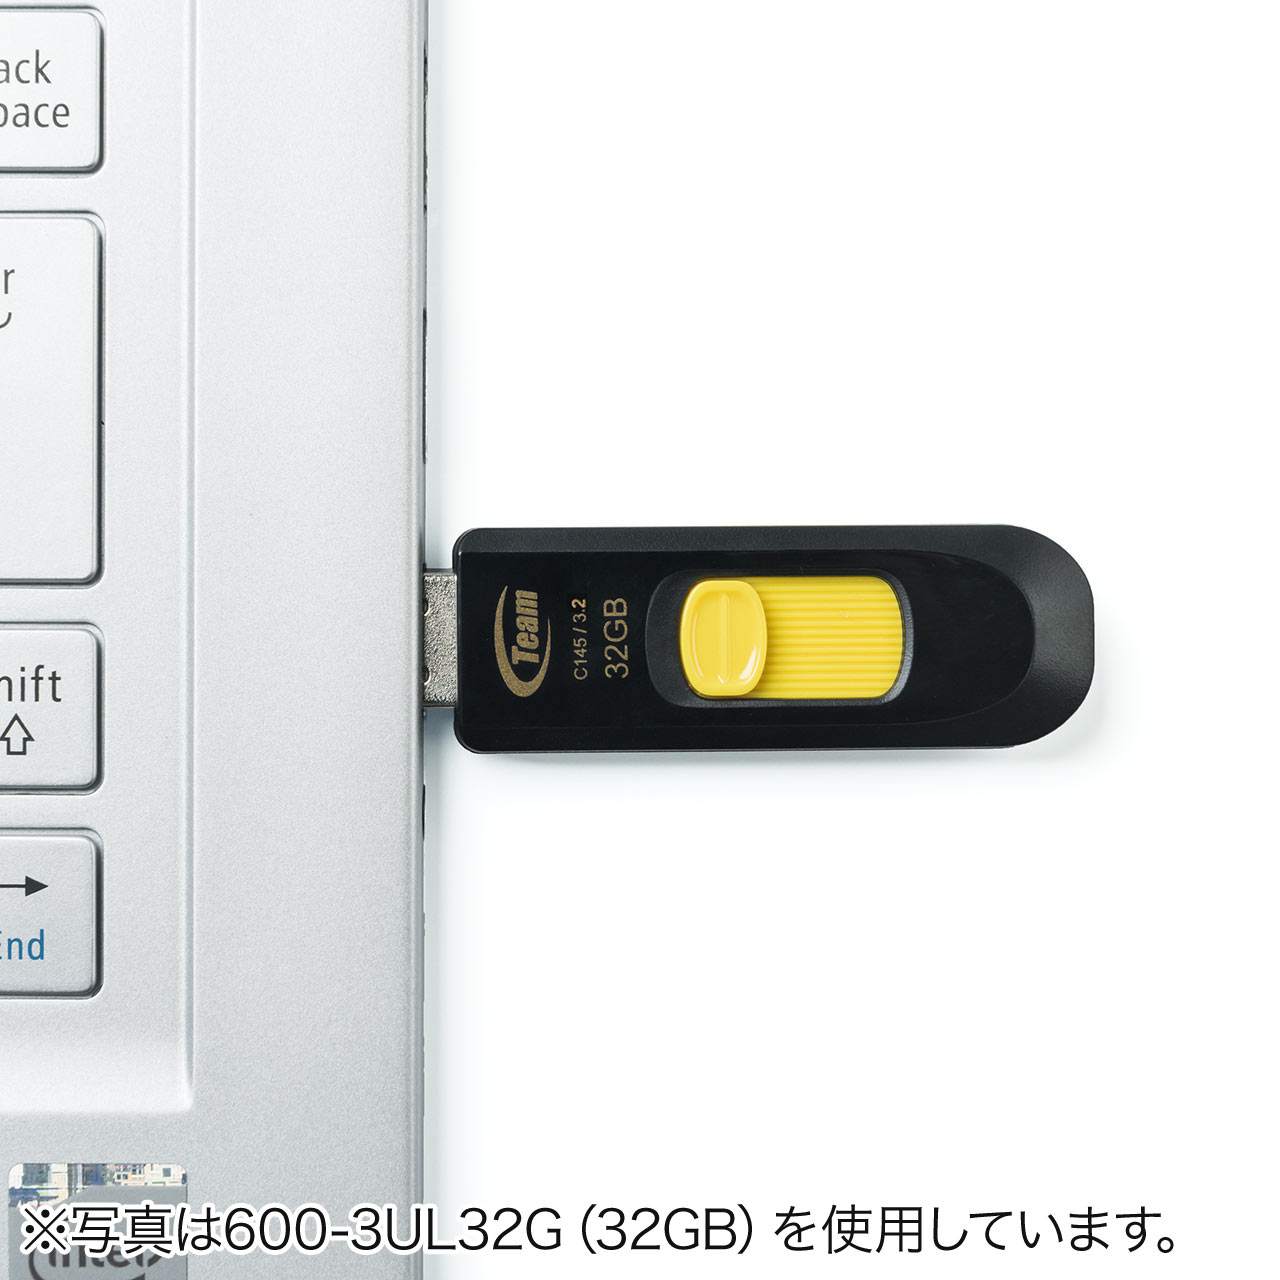 USBiUSB3.0E64GBEXChj 600-3UL64G